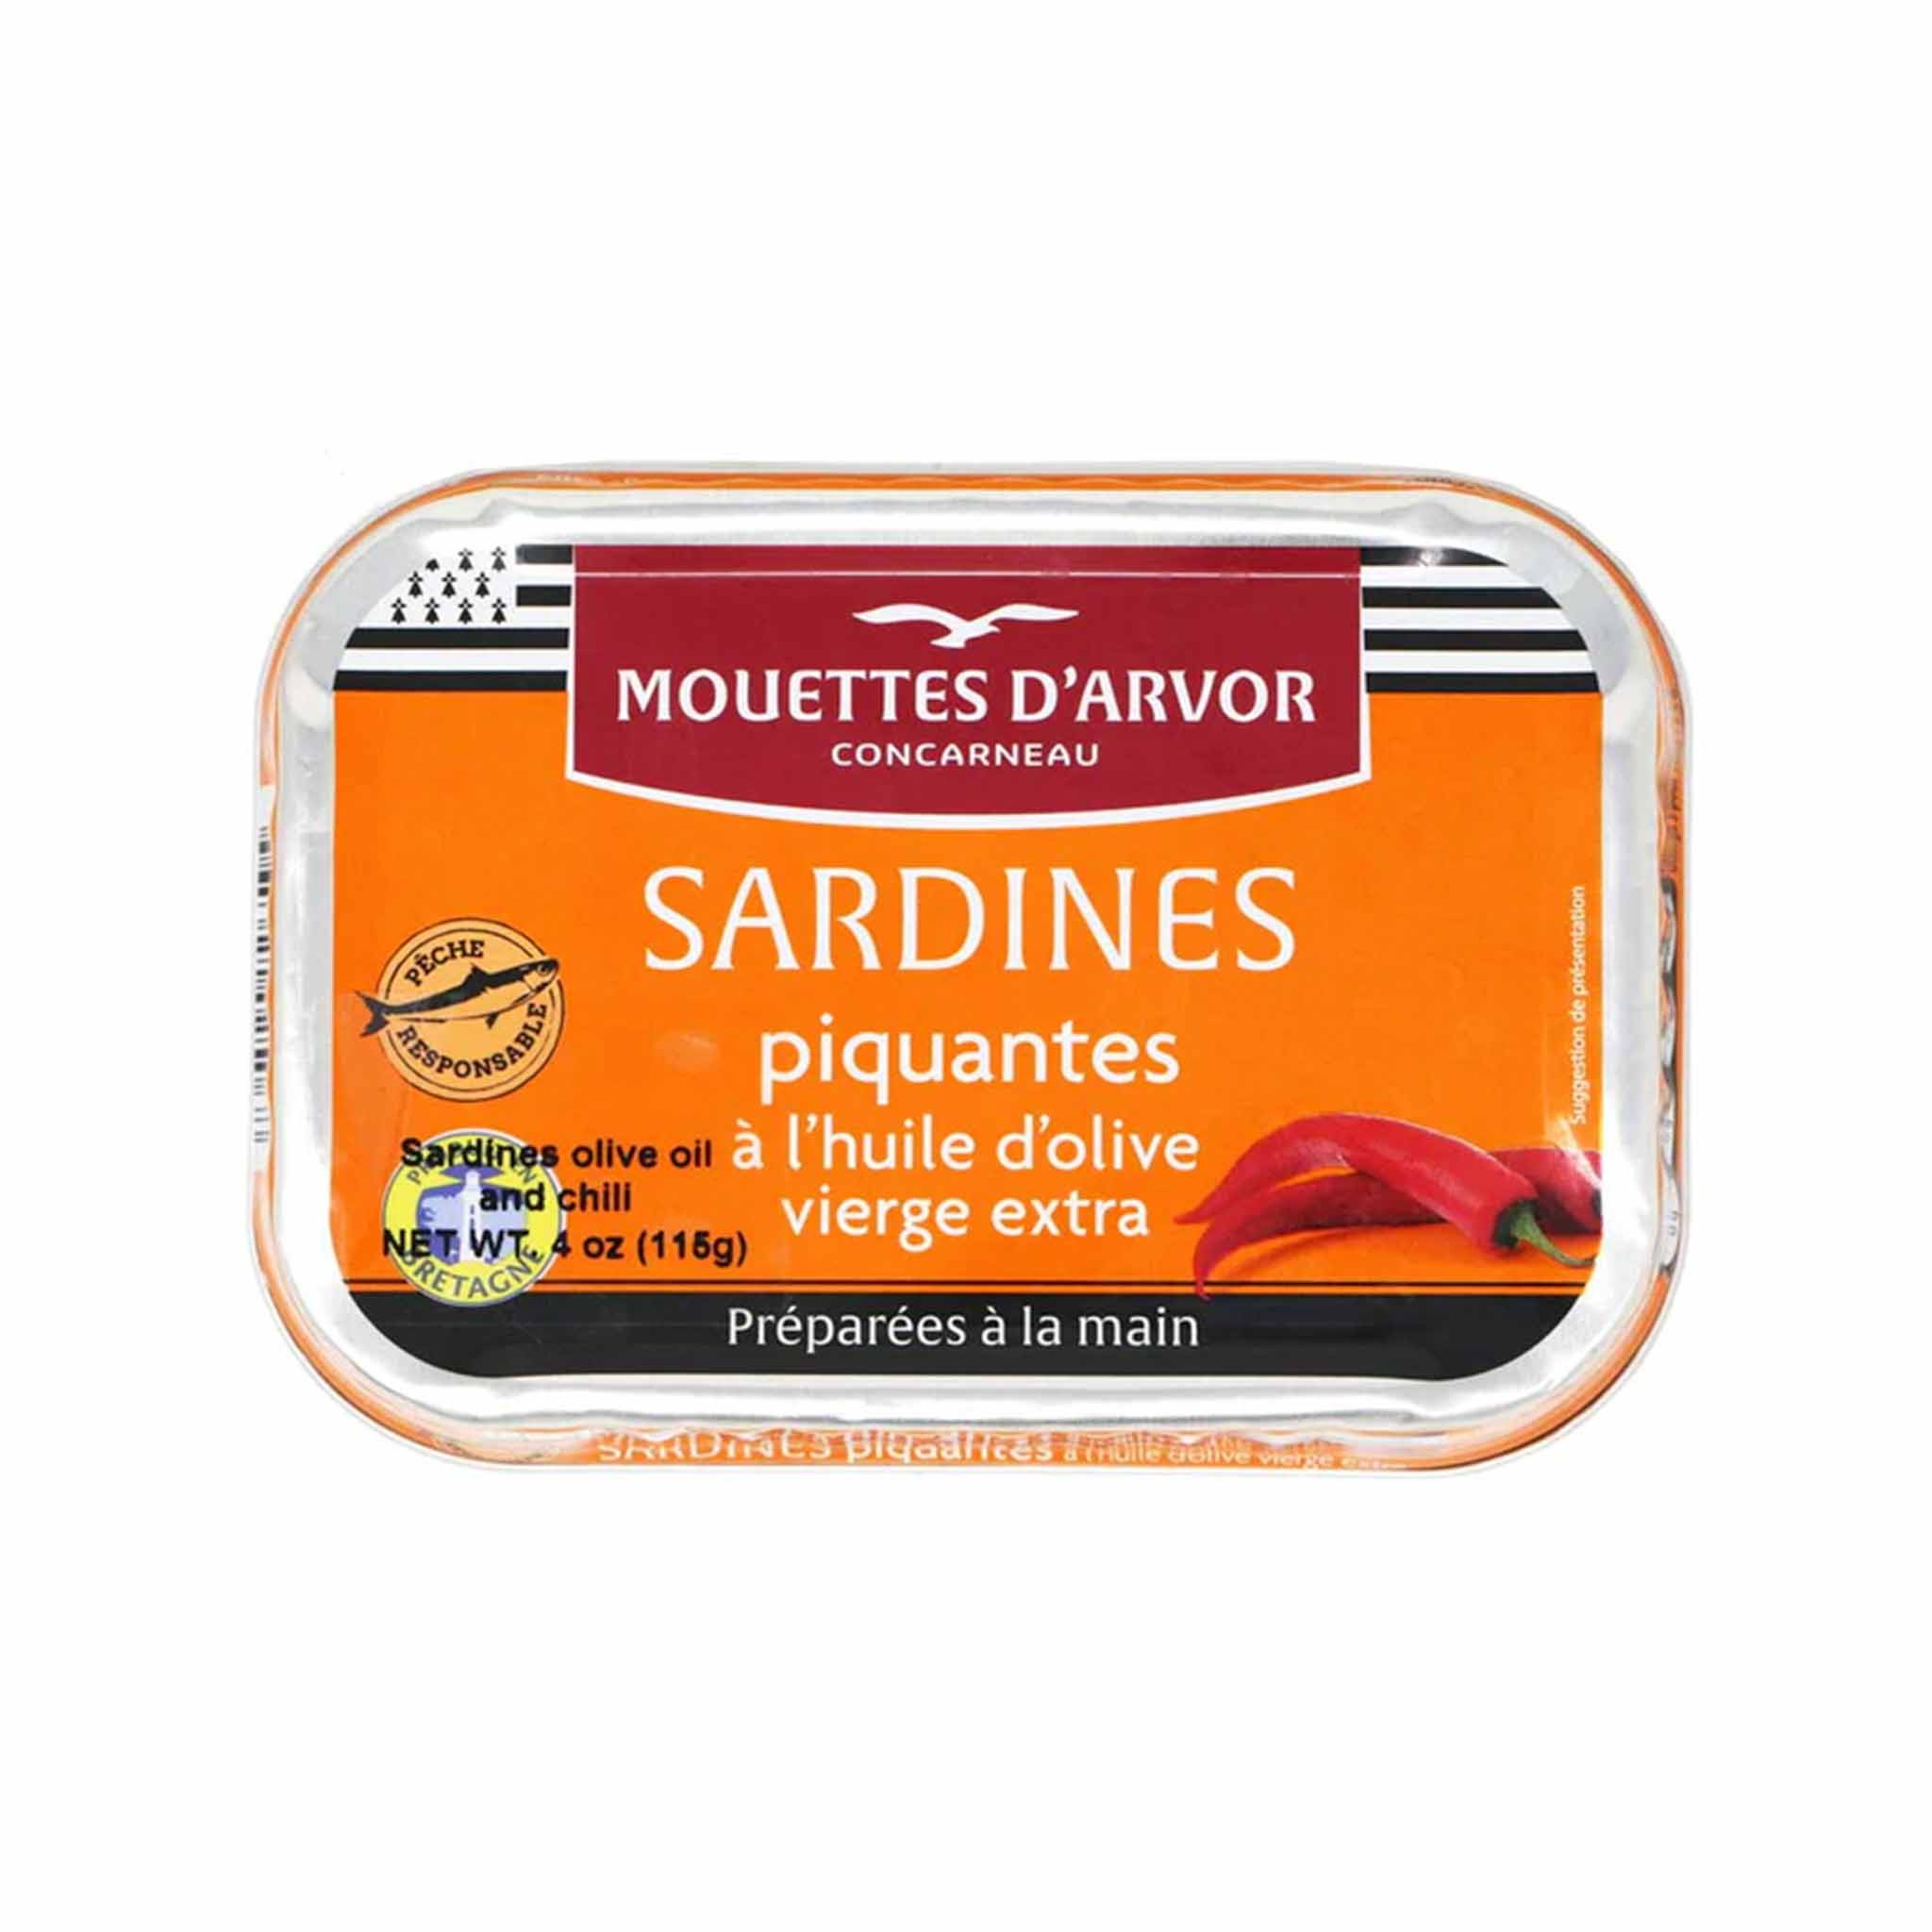 Les Mouettes d'Arvor Sardines Espelette Piquante in a Can